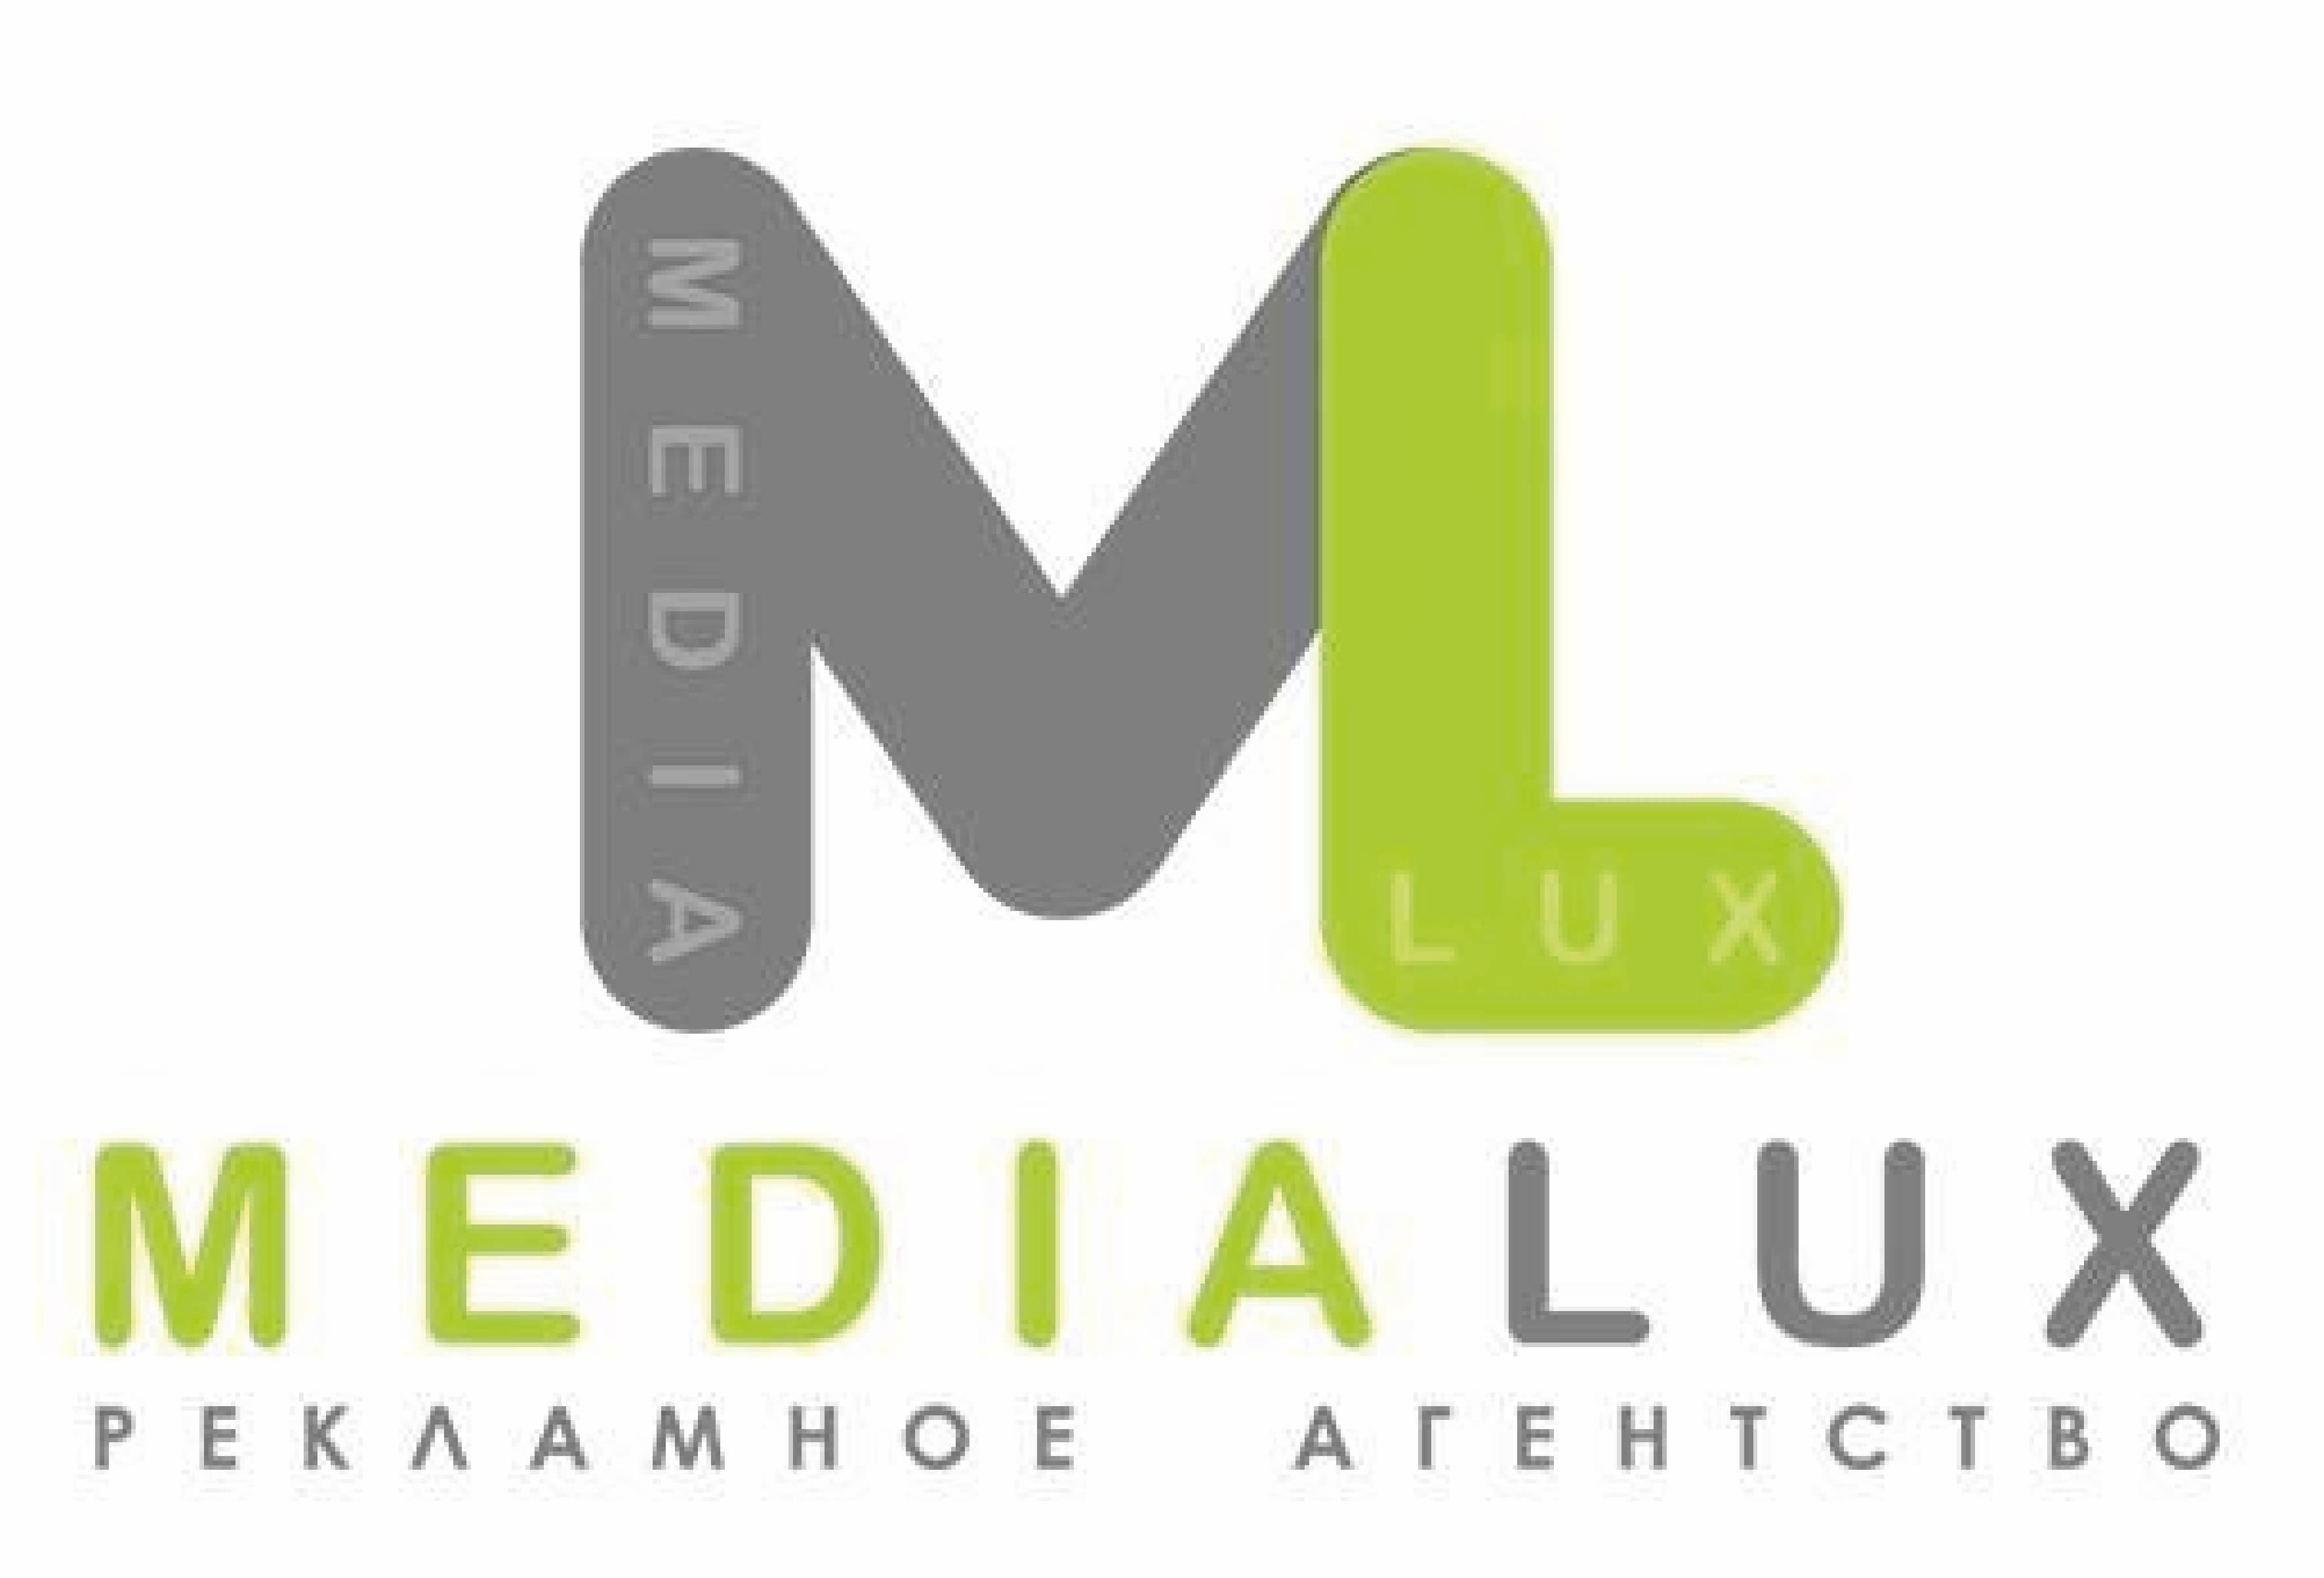 Medialux